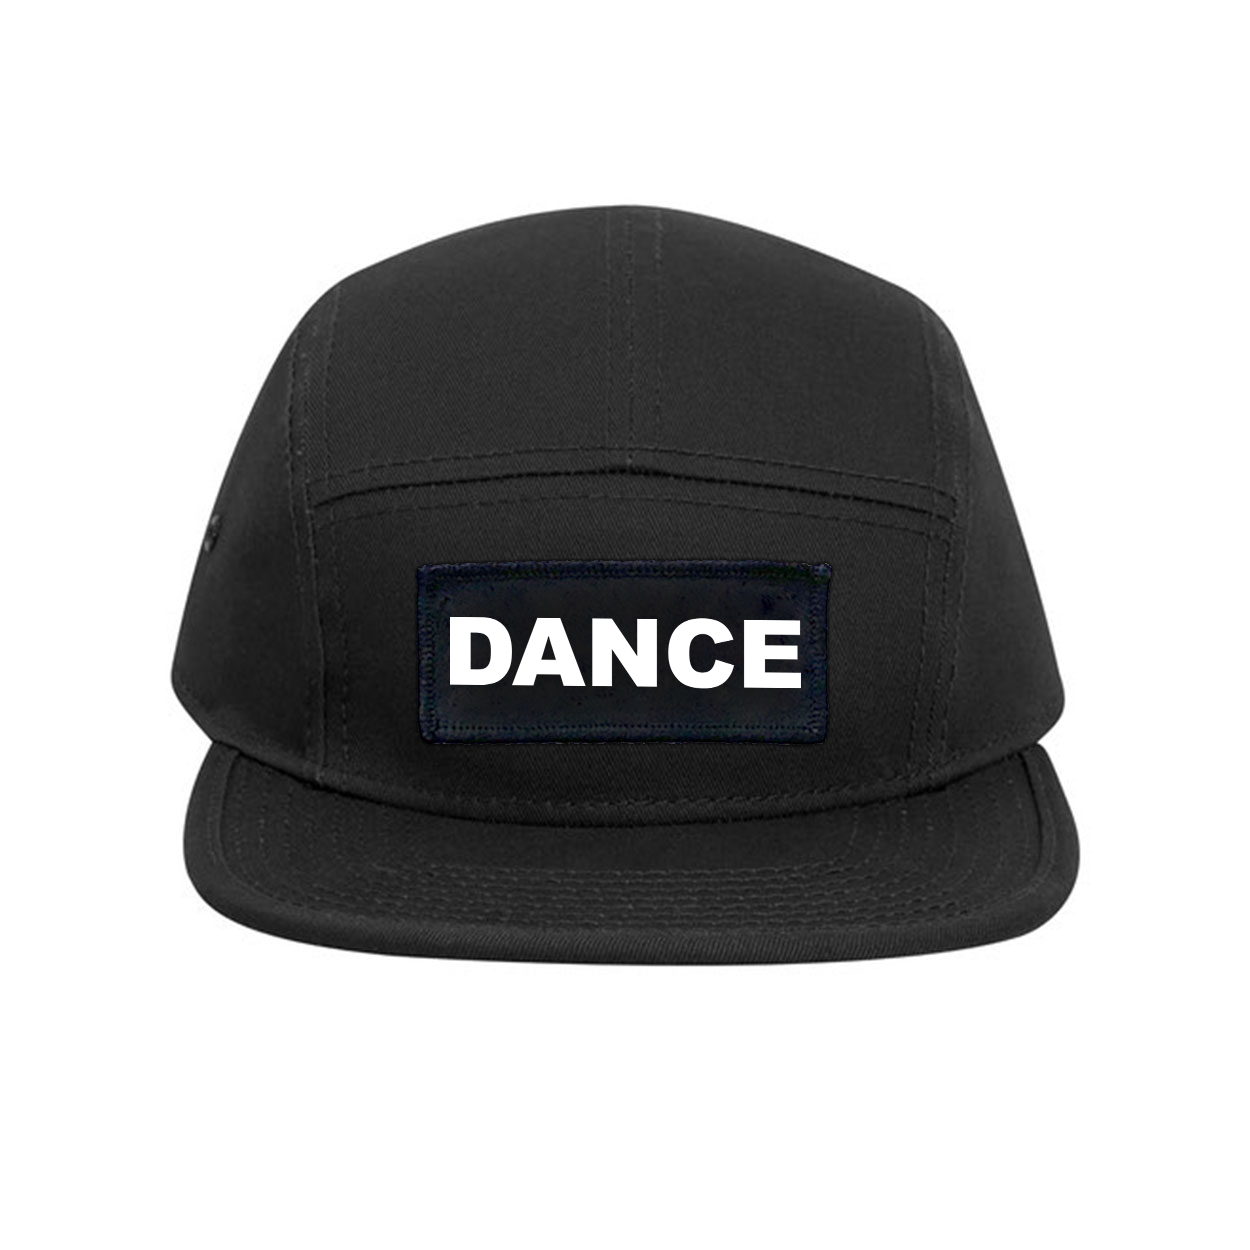 Dance Brand Logo Classic Woven Patch Classic Camper Hat Black